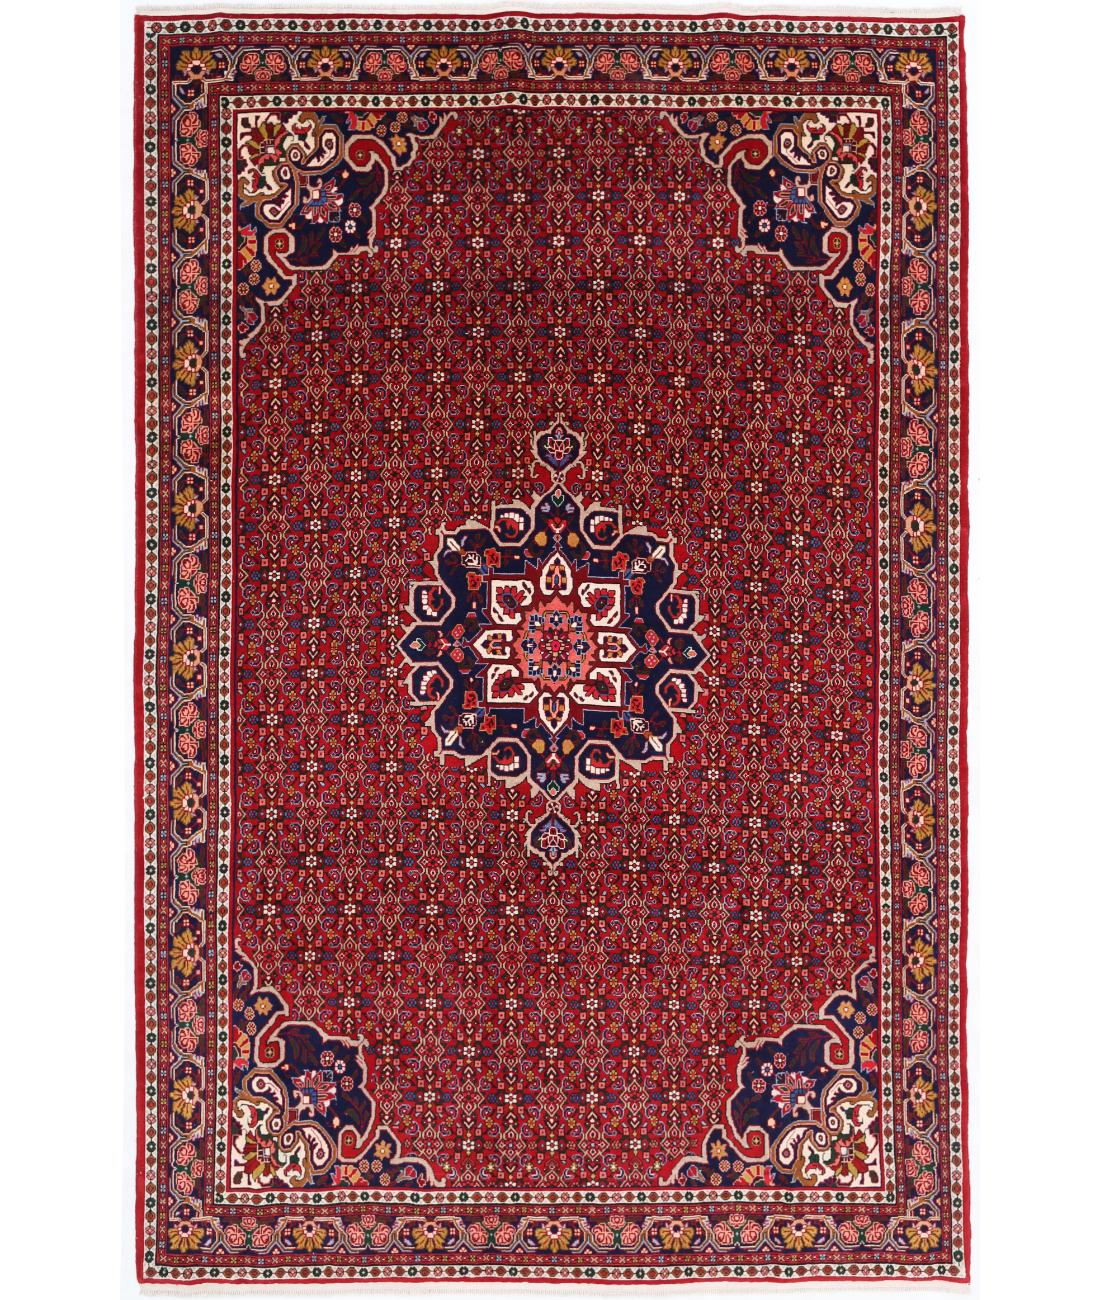 Hand Knotted Persian Bijar Wool Rug - 6'11'' x 10'6'' 6' 11" X 10' 6" ( 211 X 320 ) / Red / Blue